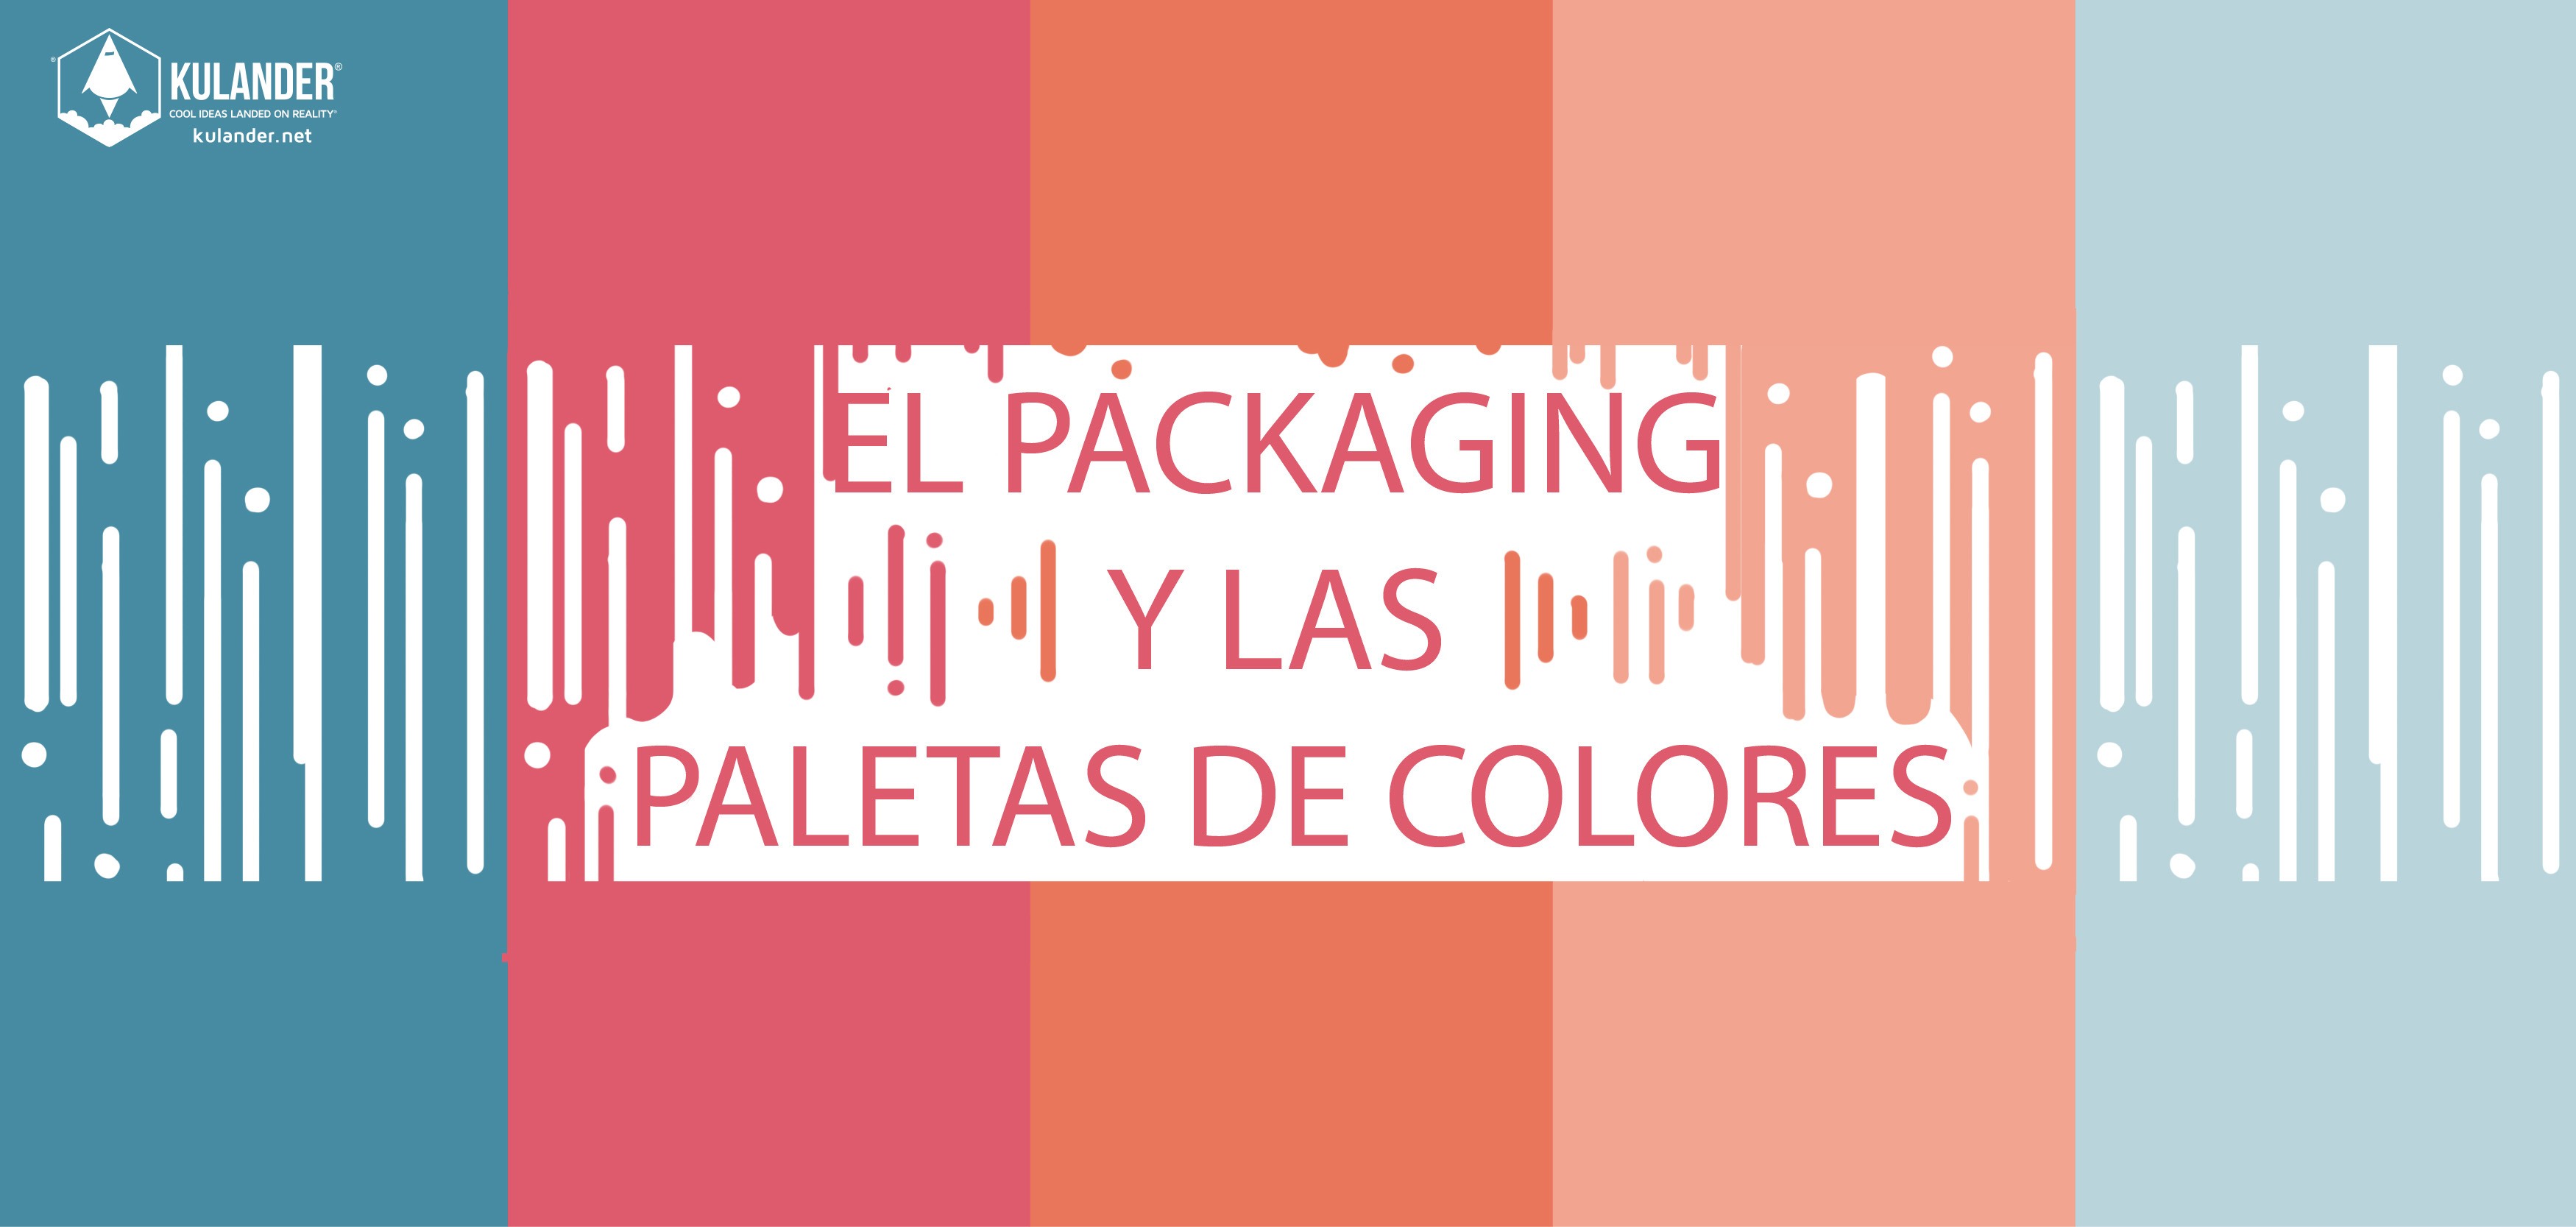 El Packaging y las paletas de colores